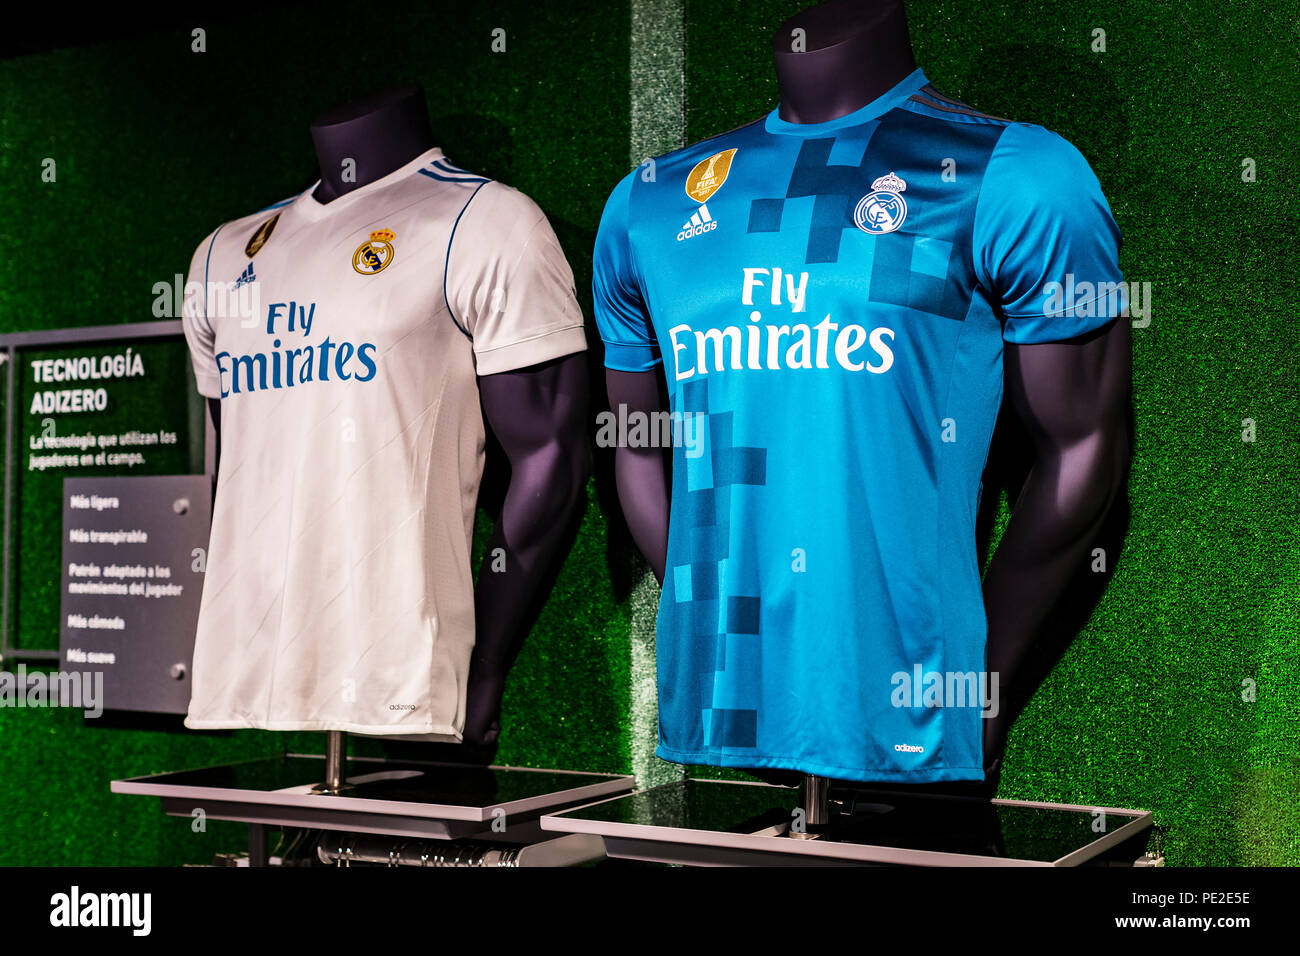 MADRID, España - 25 de marzo de 2018, Oficiales: tienda de ropa y atributos deportivos para los fans del Real Madrid Club de Fútbol Fotografía de stock - Alamy